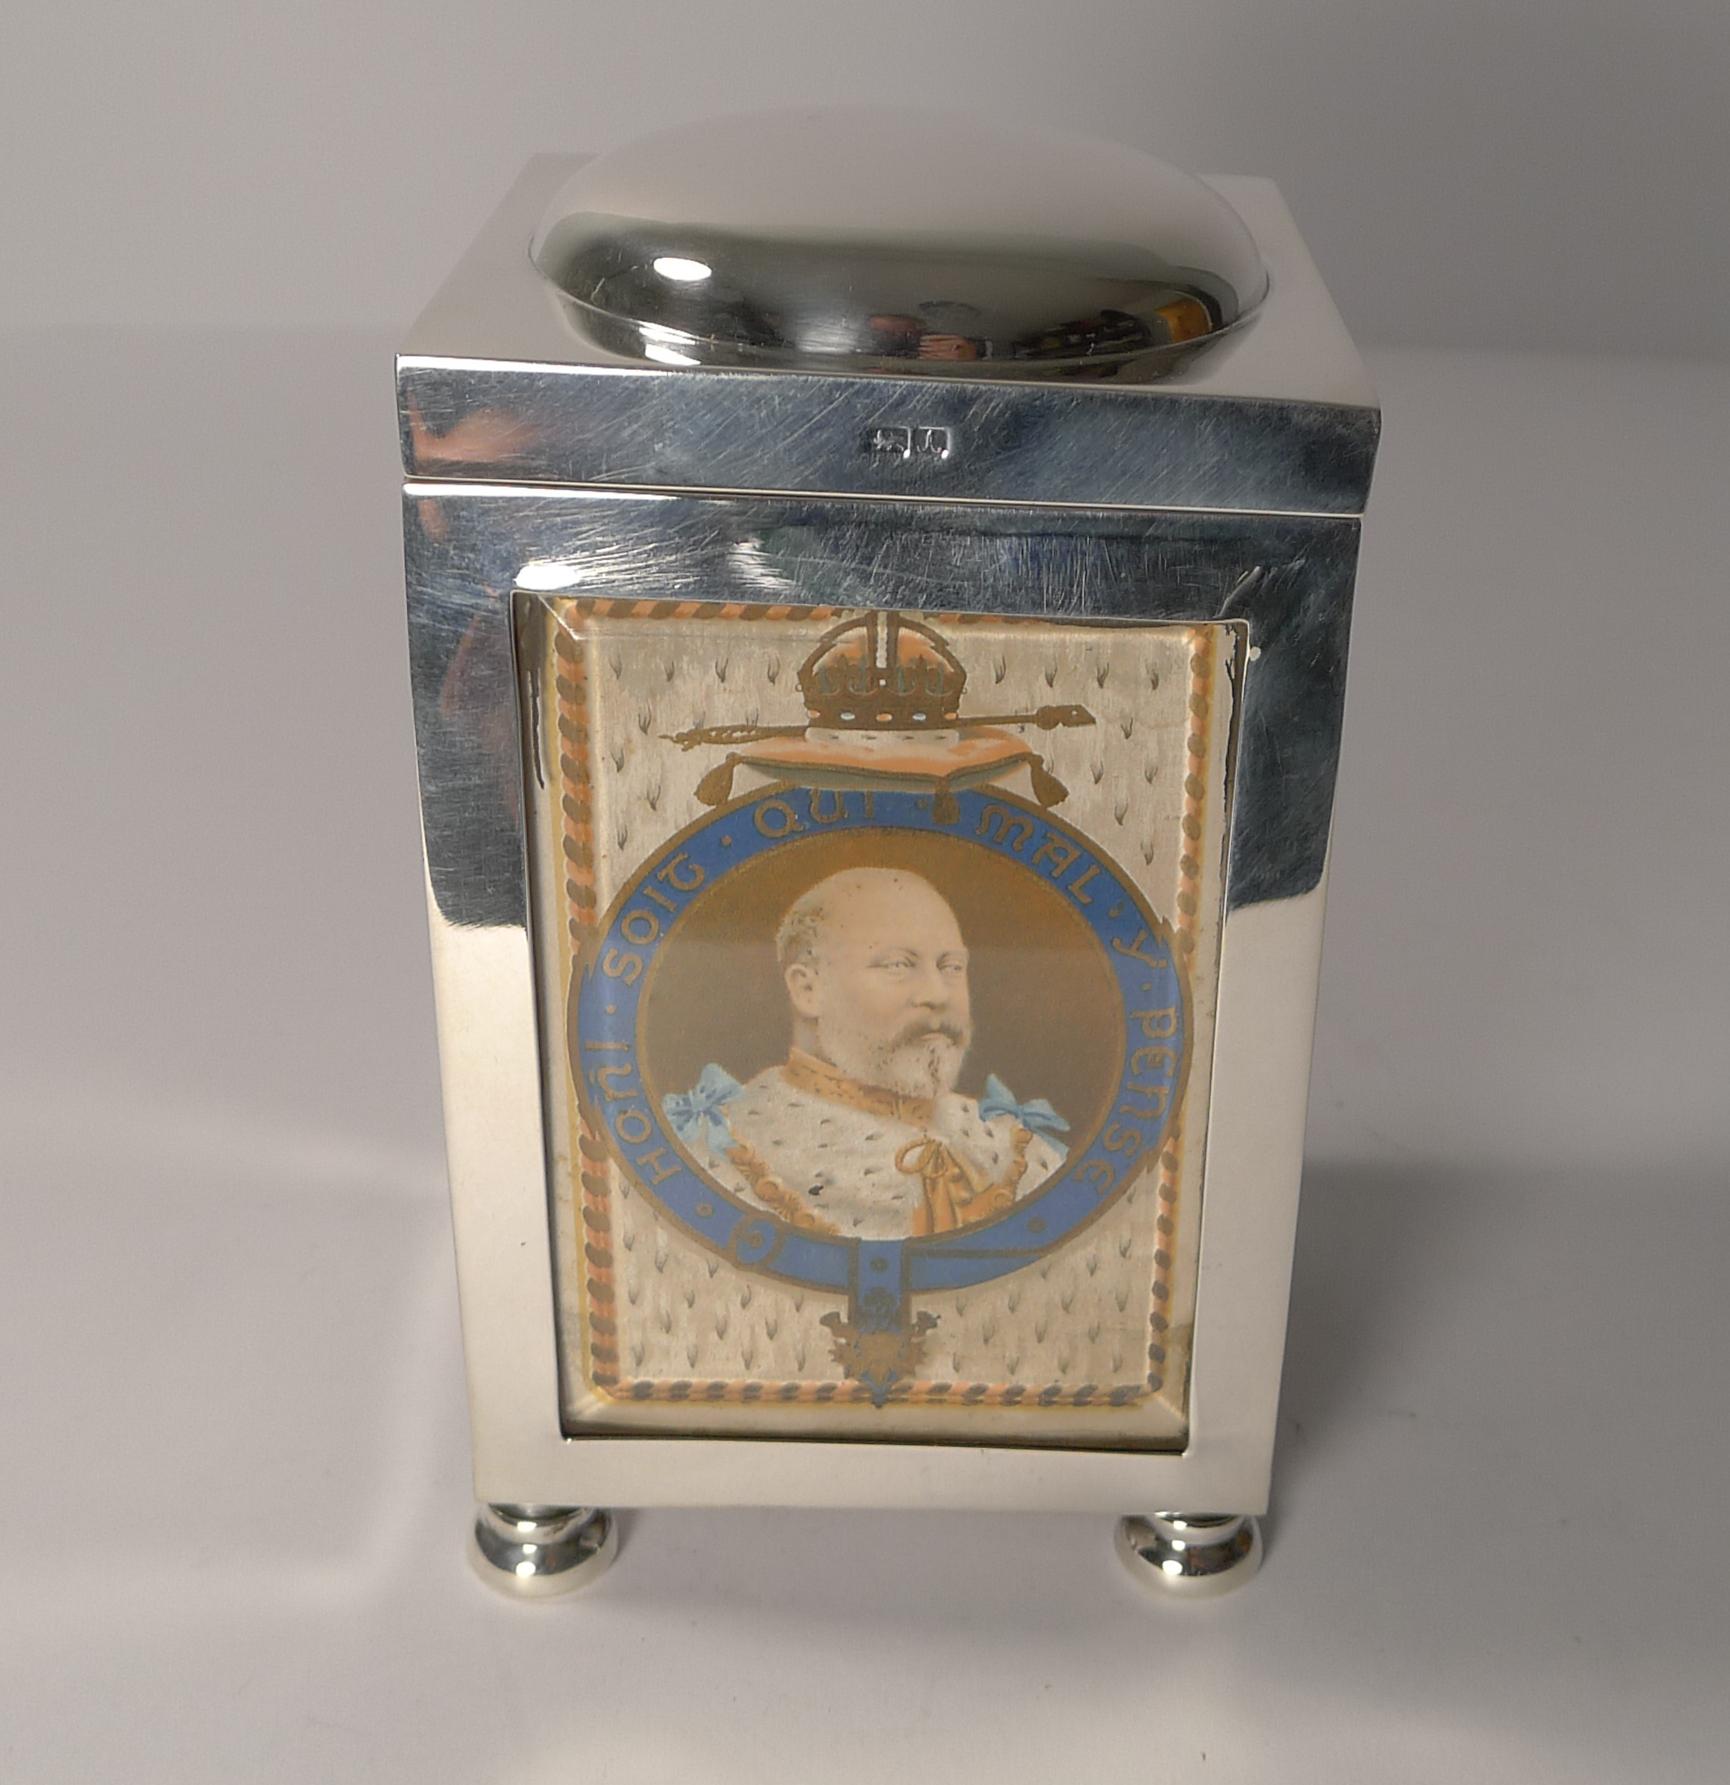 Ein wunderschönes und seltenes Exemplar einer englischen Spielkartenbox der Silberschmiede Grey & Co.

Auf den vier Originalfüßen stehend, sind alle vier Tafeln mit dem originalen abgeschrägten Glas versehen, das vier originale antike Spielkarten